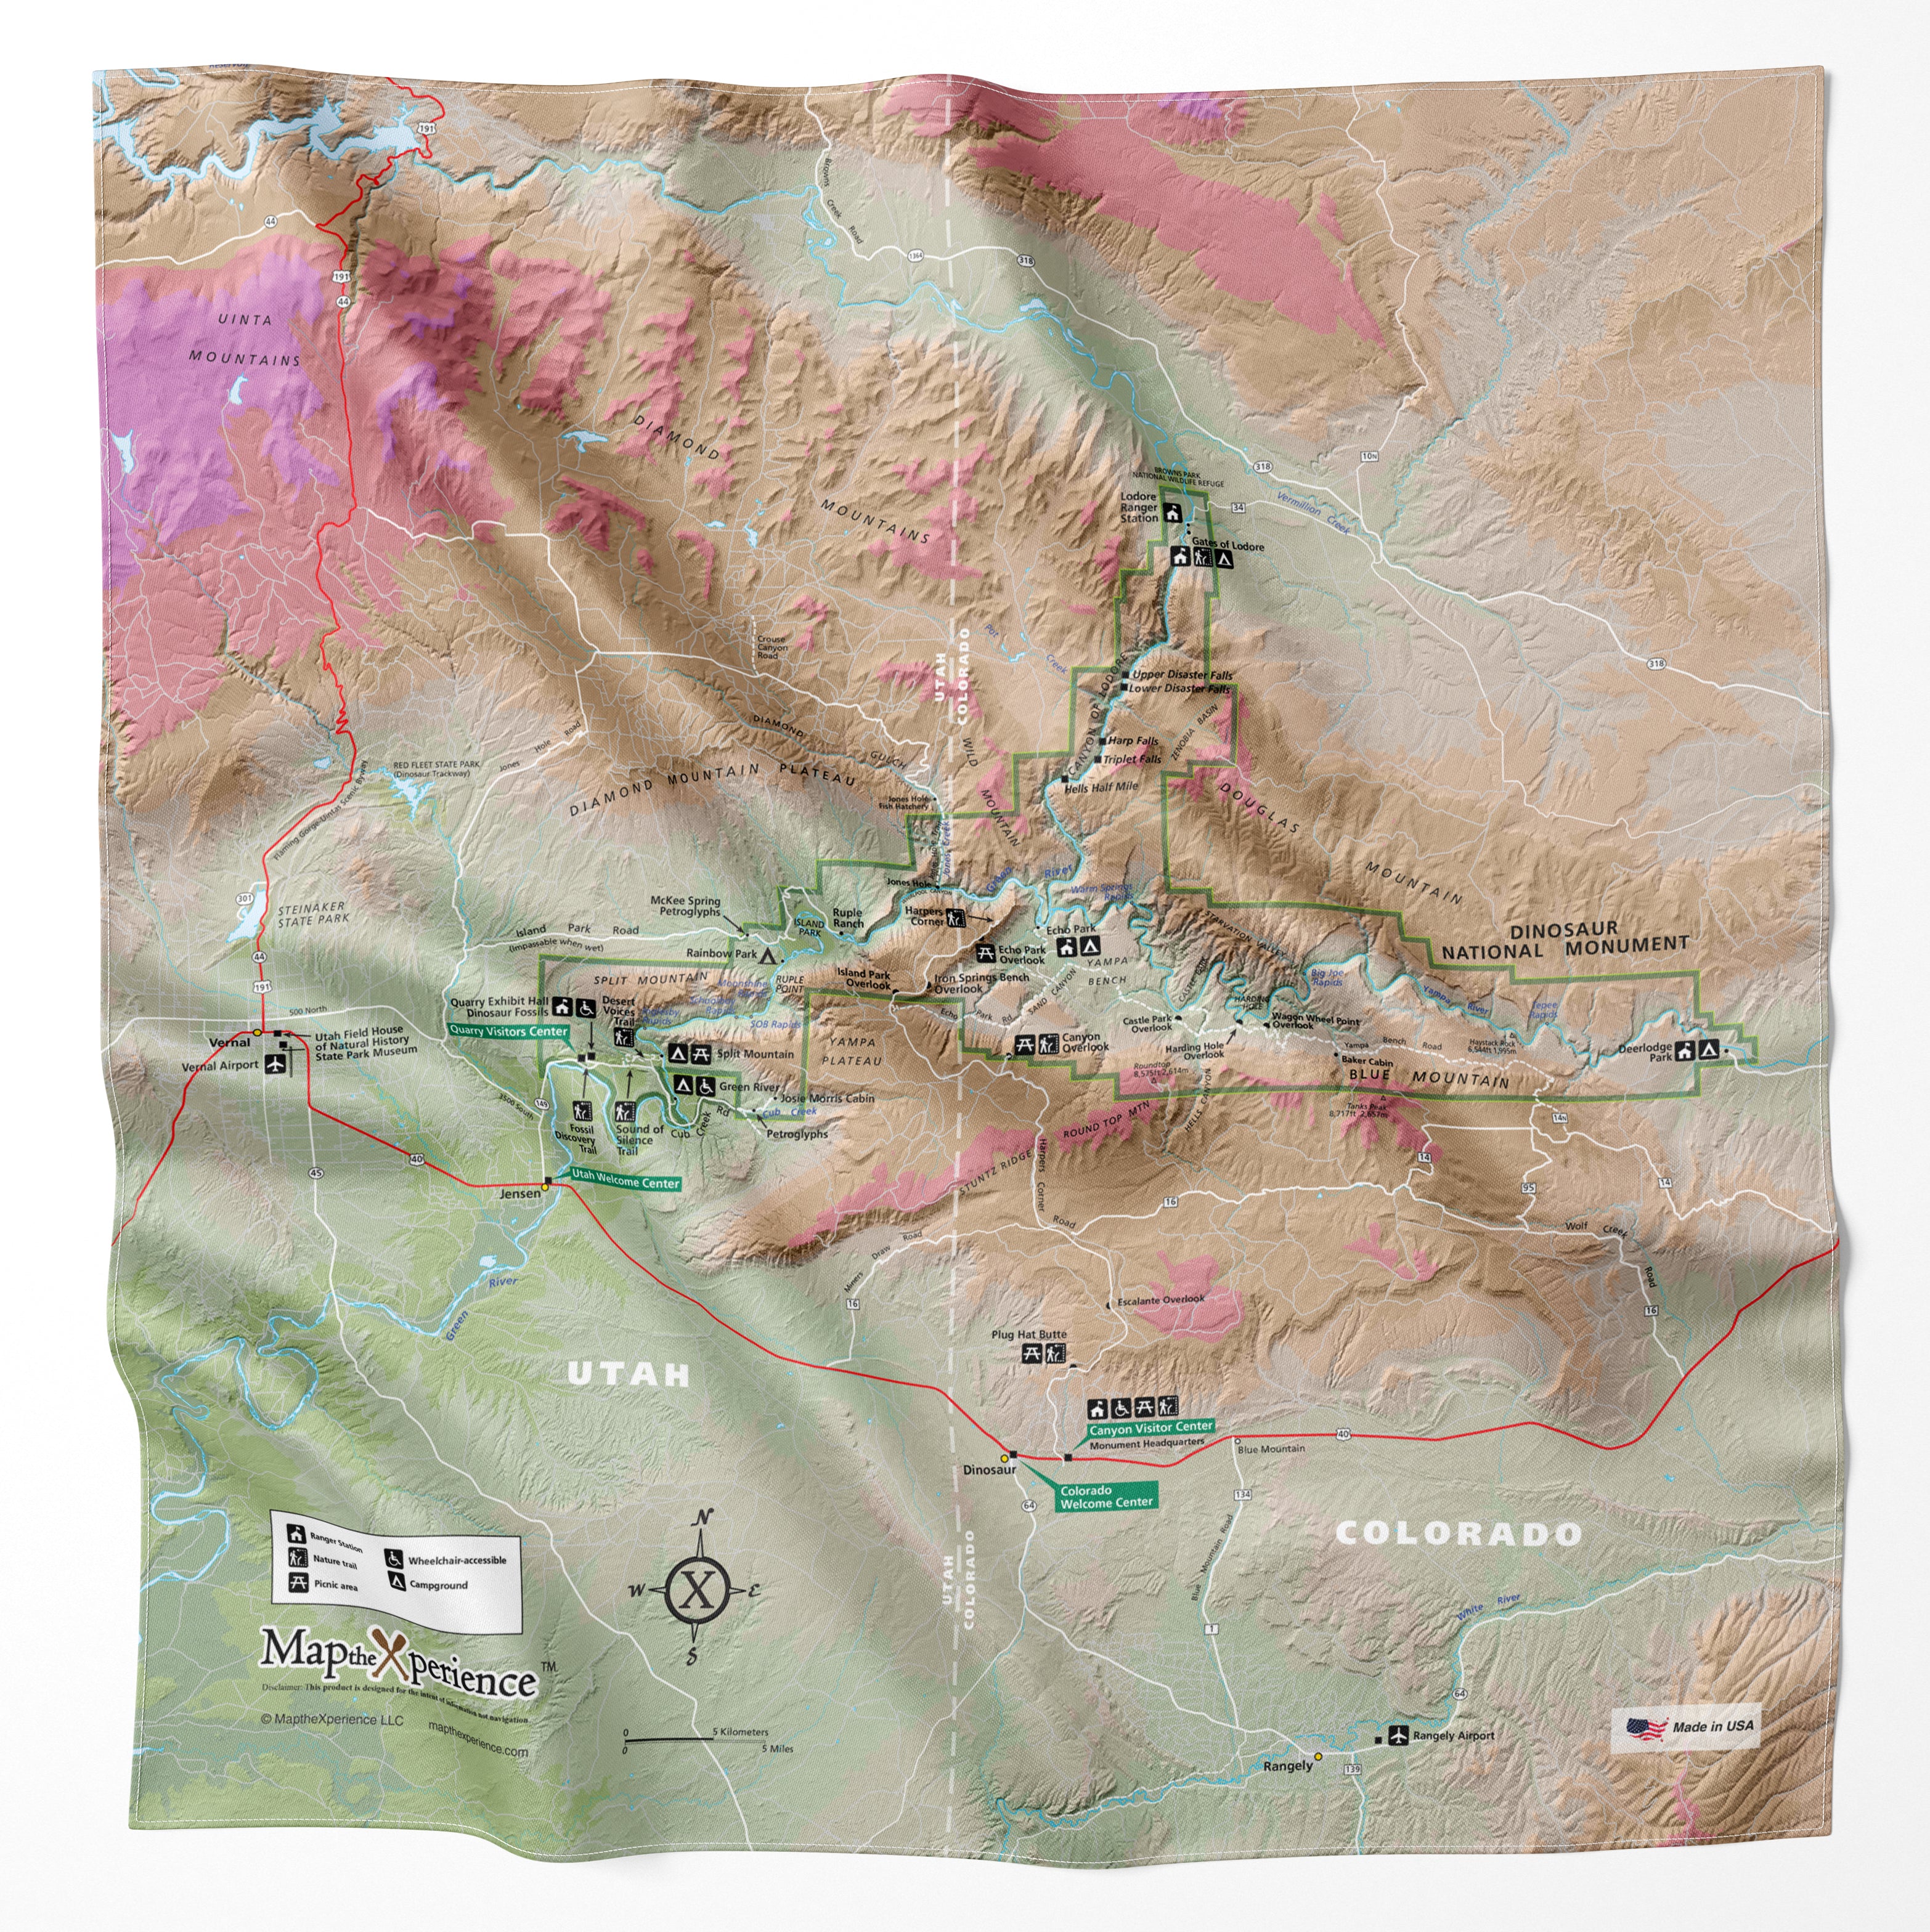 Dinosaur National Monument Handy Map Bandana